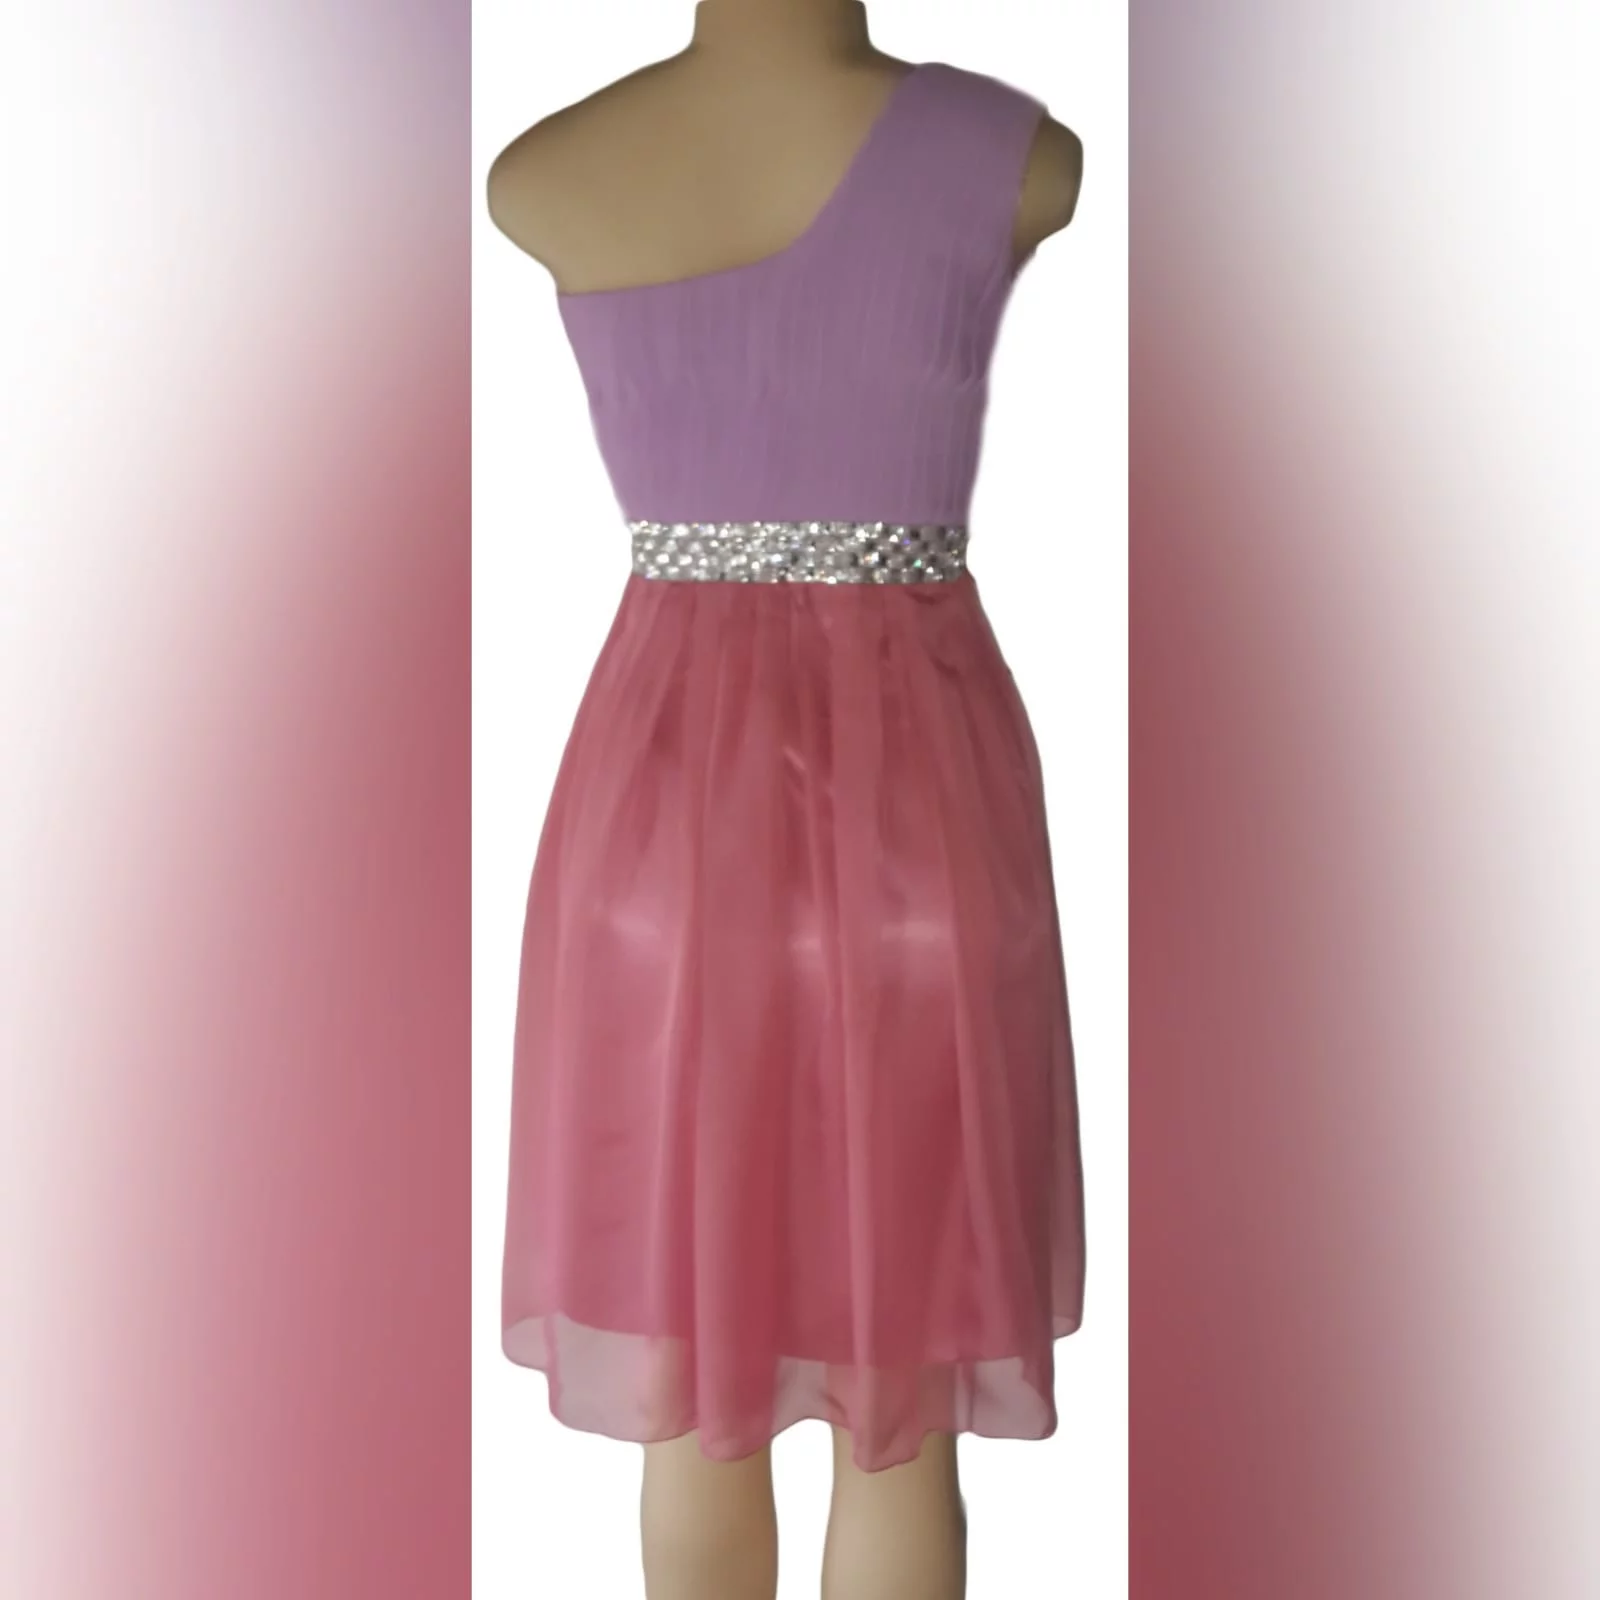 Vestido curto de dama de honra cor-de-rosa e lilás 4 vestido curto de dama de honra em chiffon cor-de-rosa e lilás, com um só ombro. Corpete plissado com detalhe de cinturão prateado.